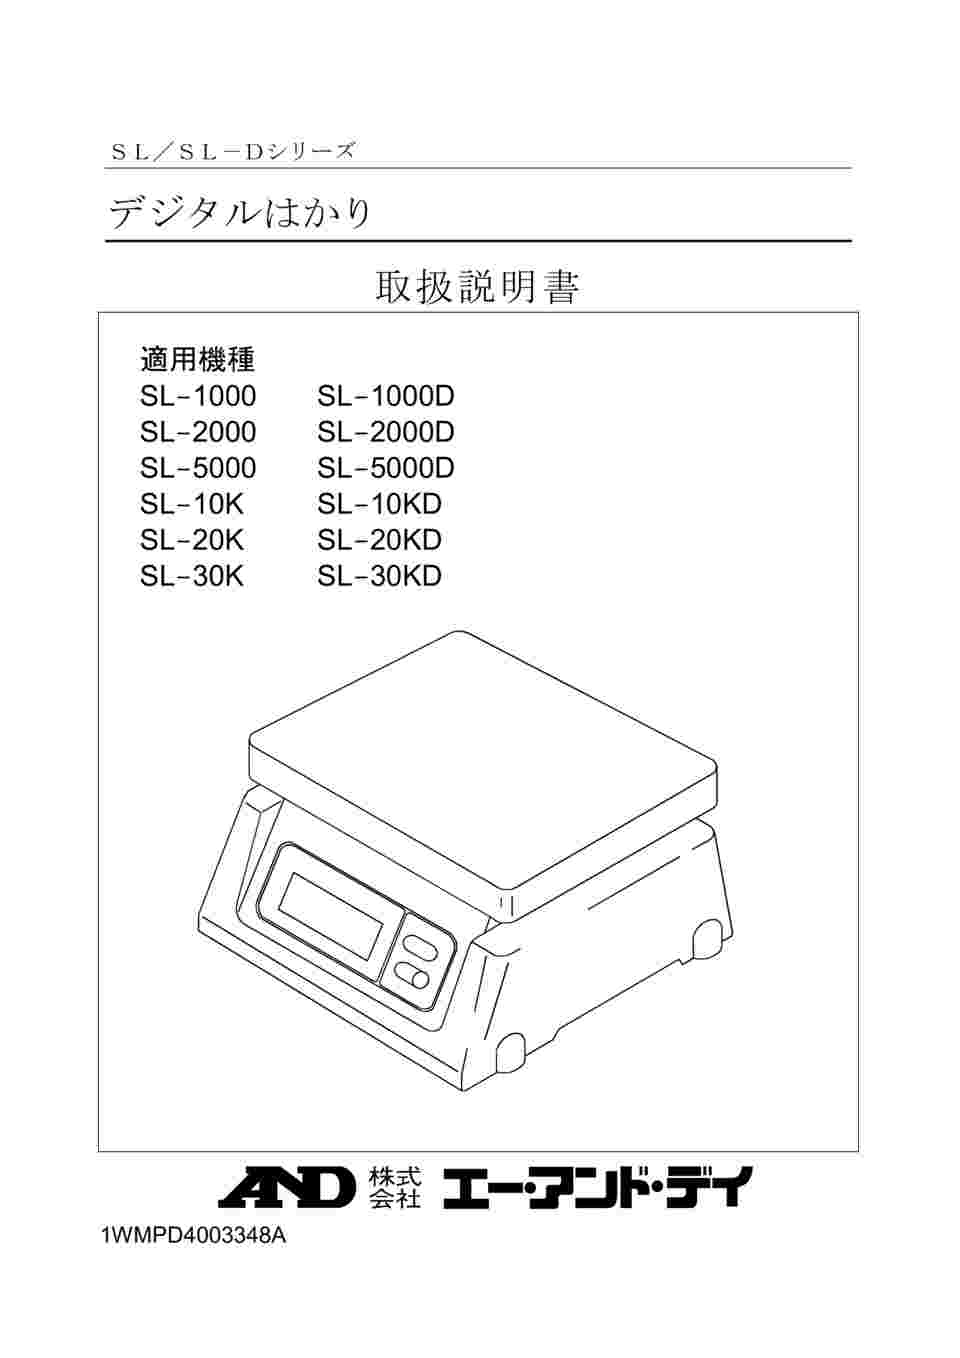 AD デジタル両面表示はかり SL-5000D ひょう量:5000g 最小表示:2g  皿寸法:230(W)*190(D)mm 検定無 価格比較